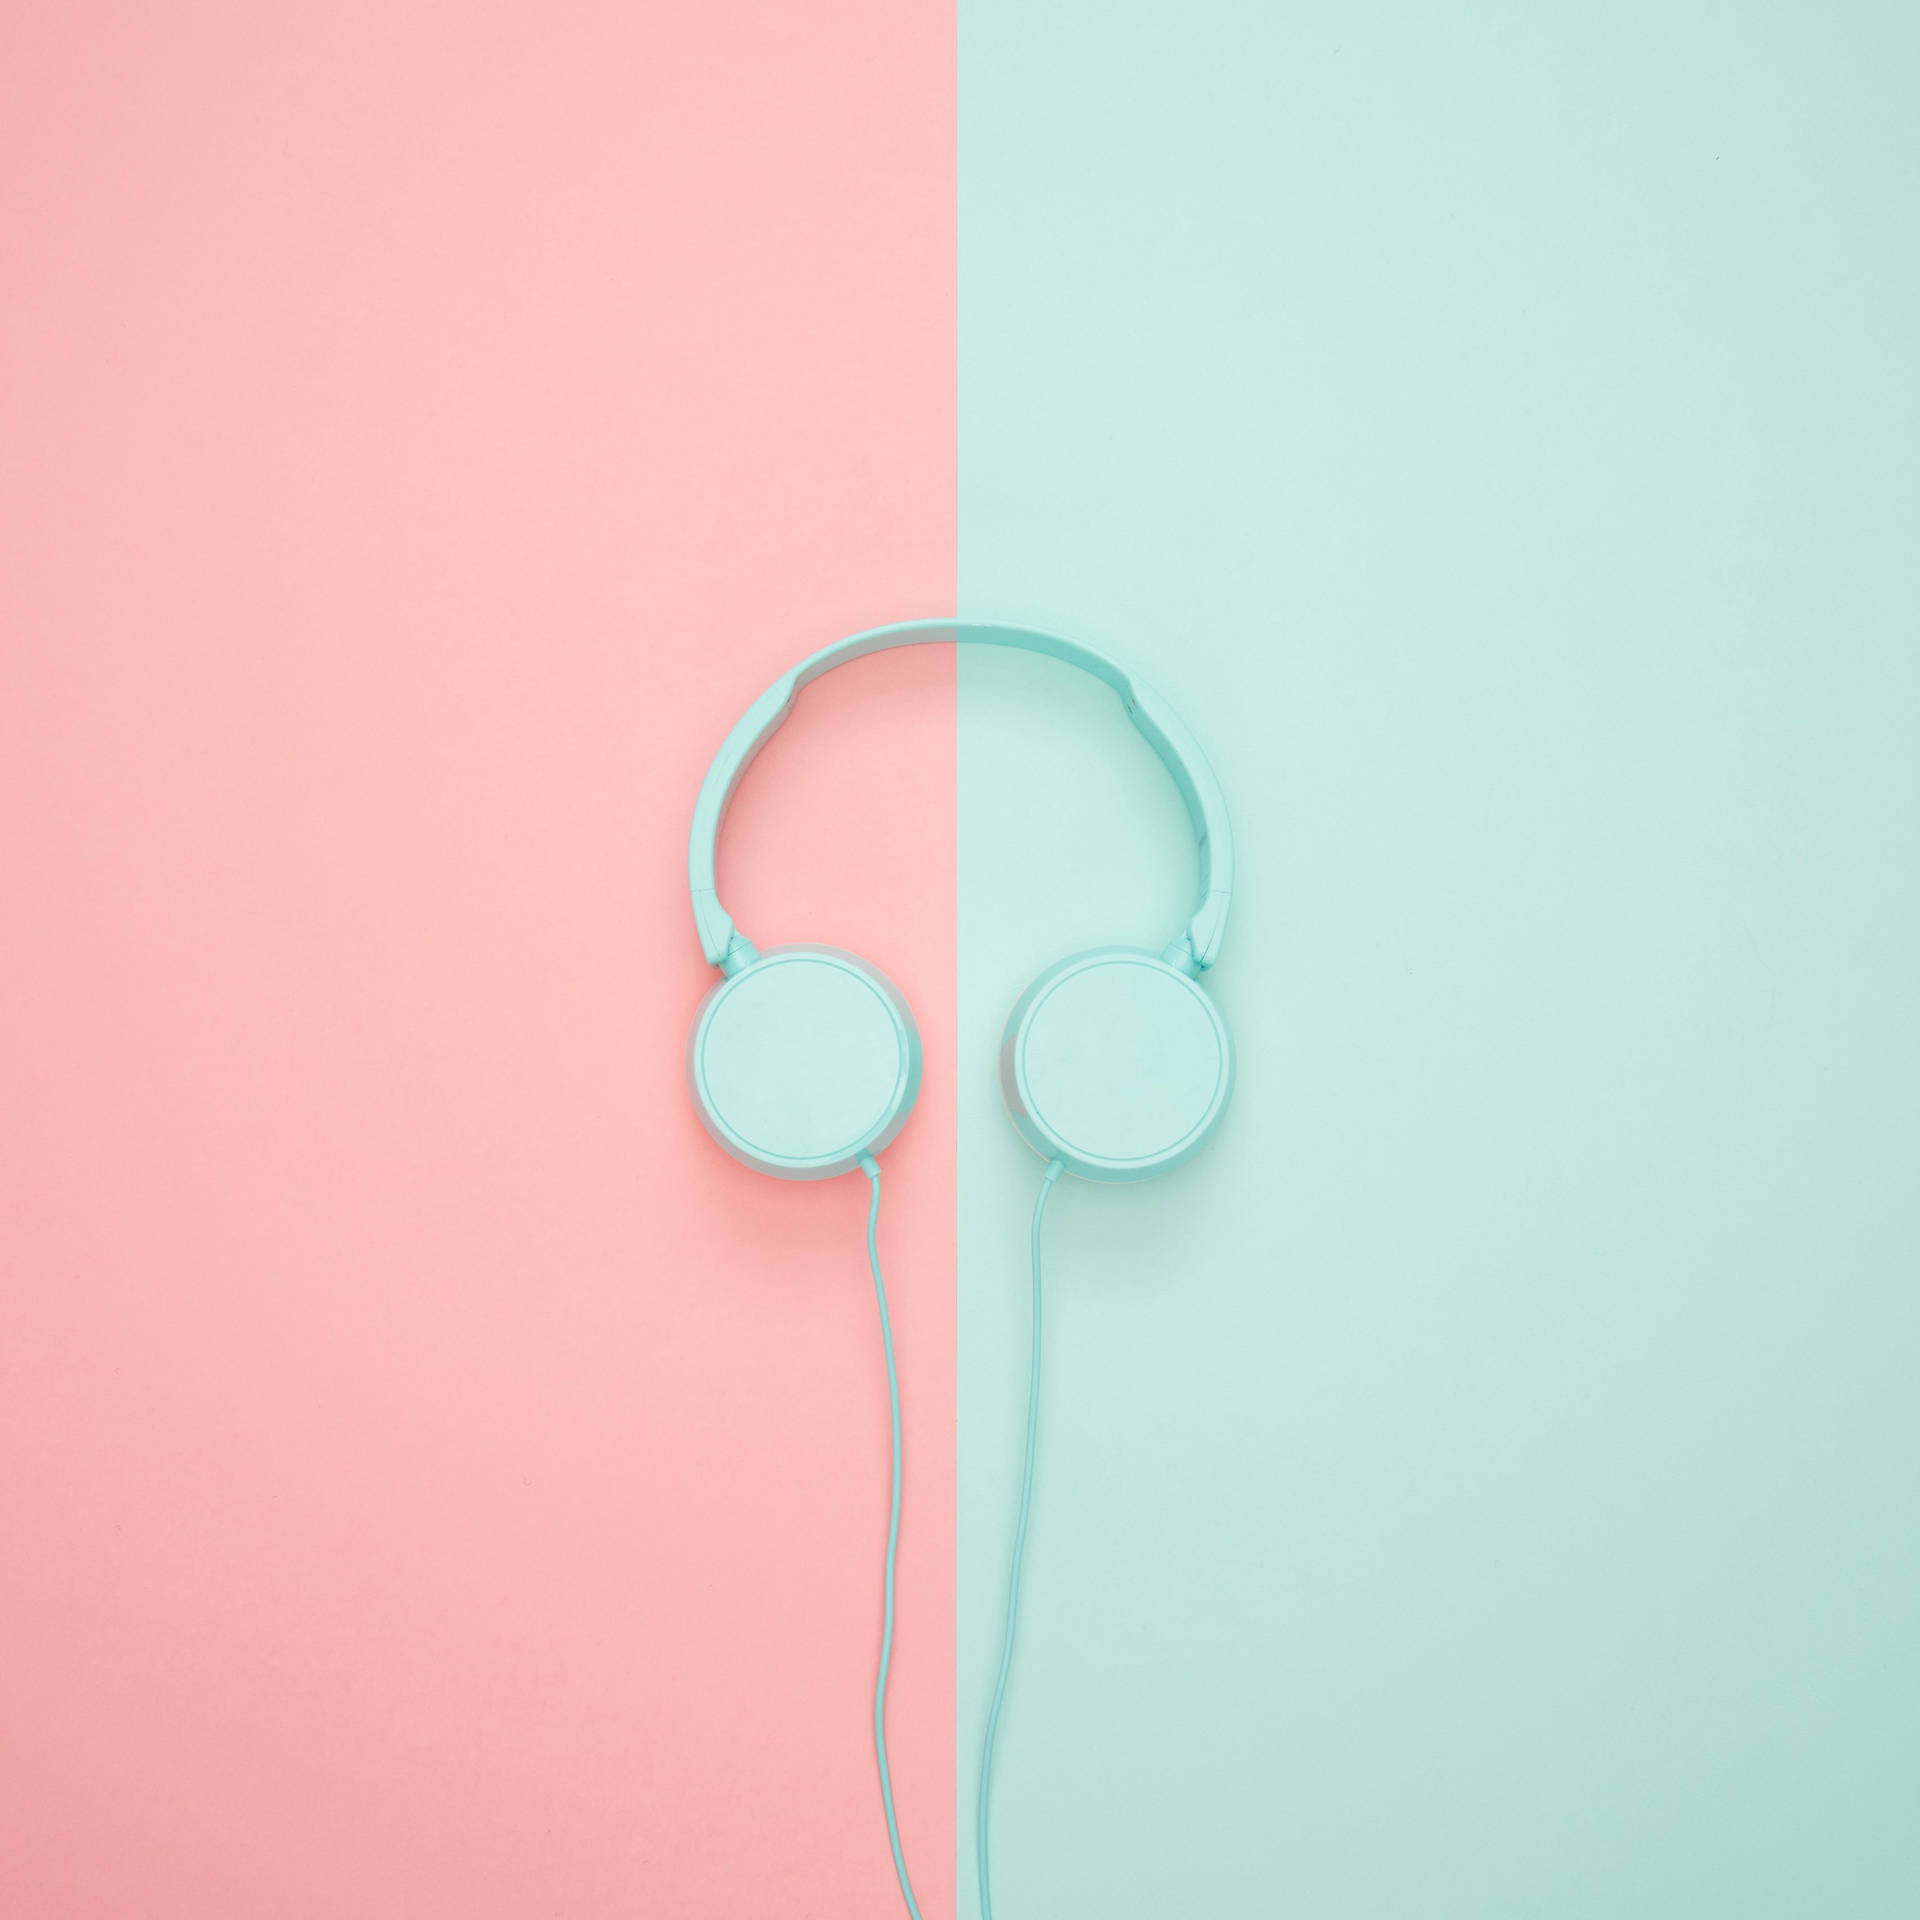 Ipad Pro 12.9 Pastel Turquoise Headphones Picture